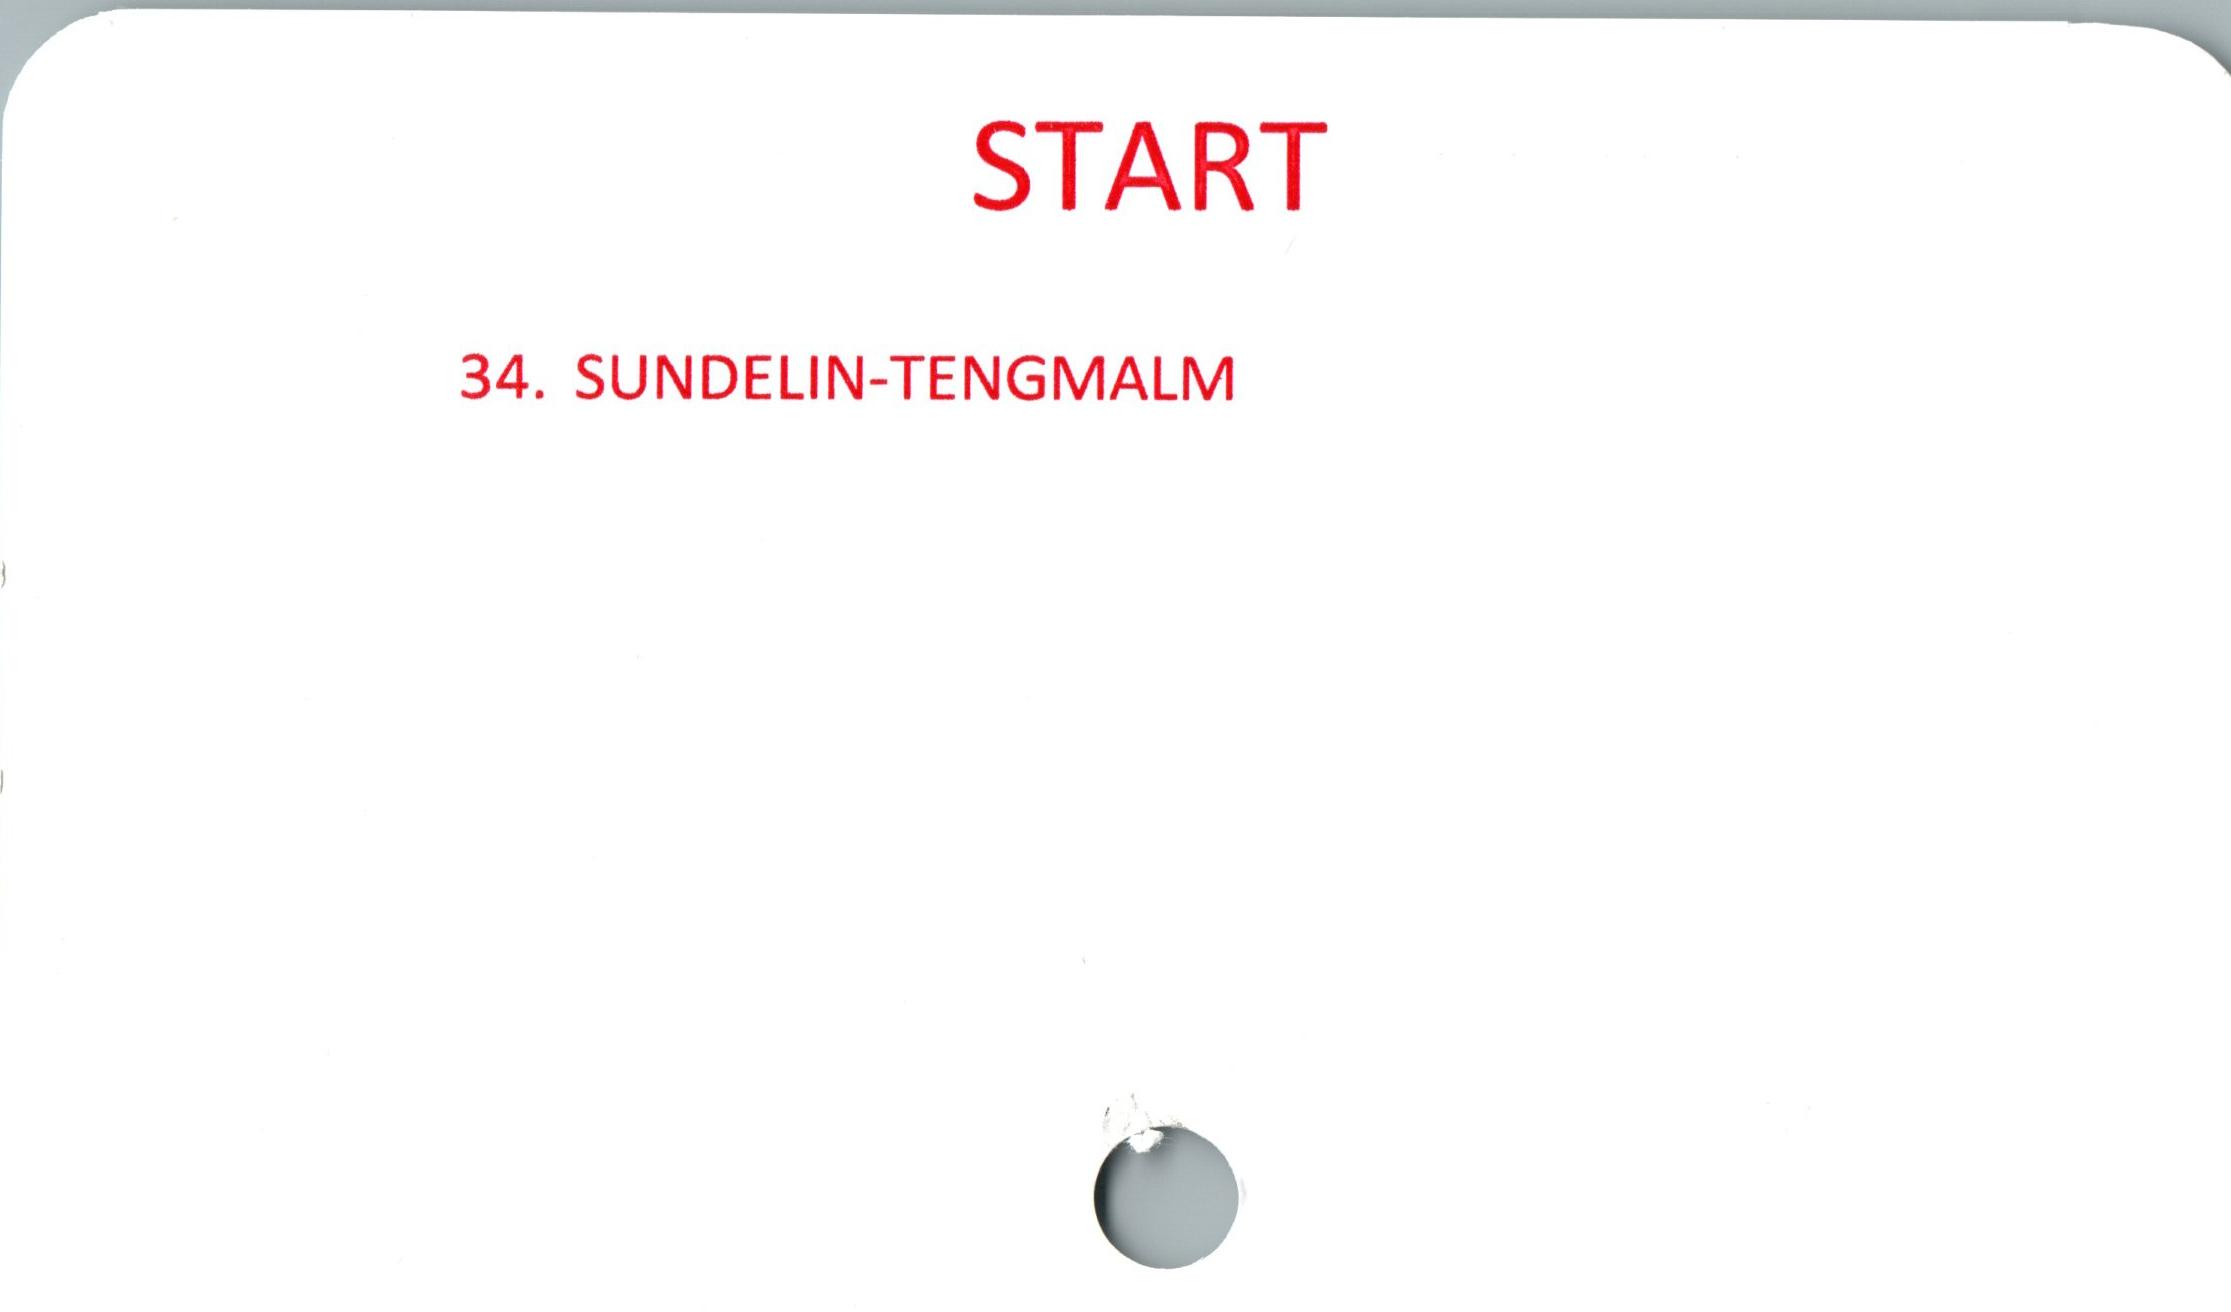  ﻿START

1

34. SUNDELIN-TENGMALM